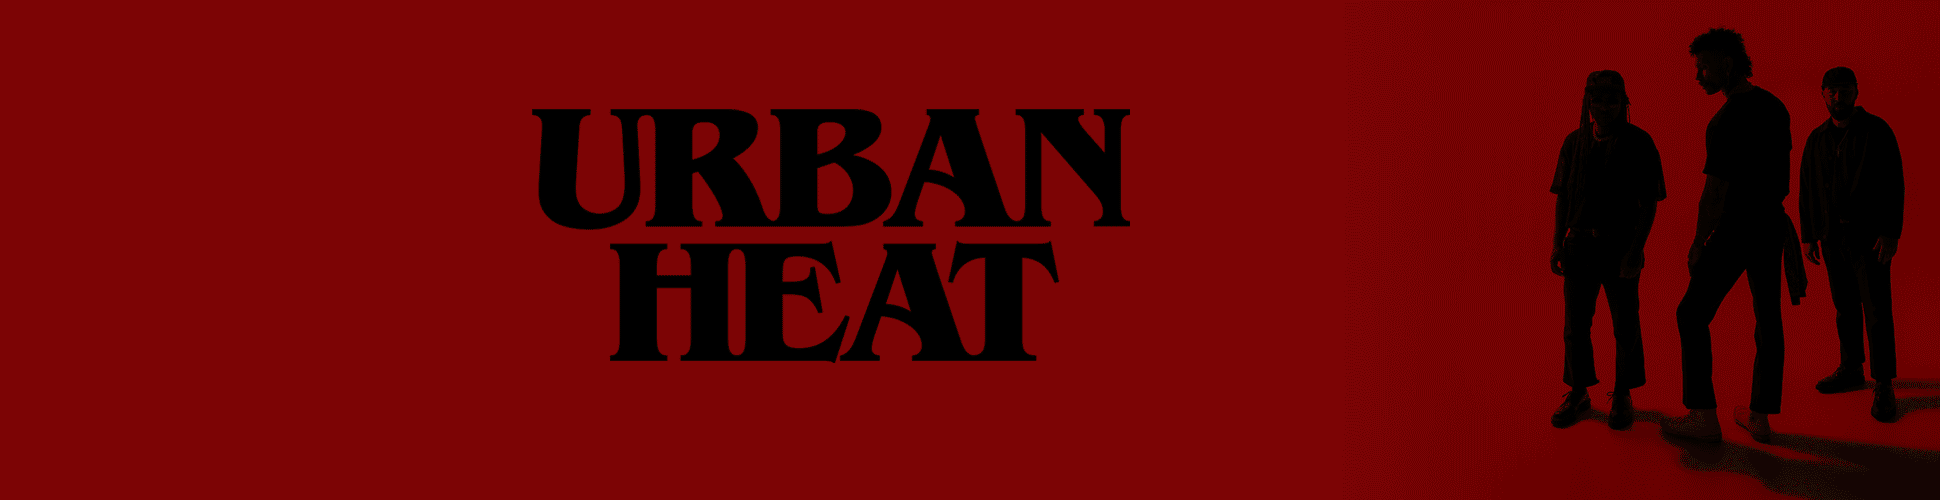 Urban Heat Banner Ad